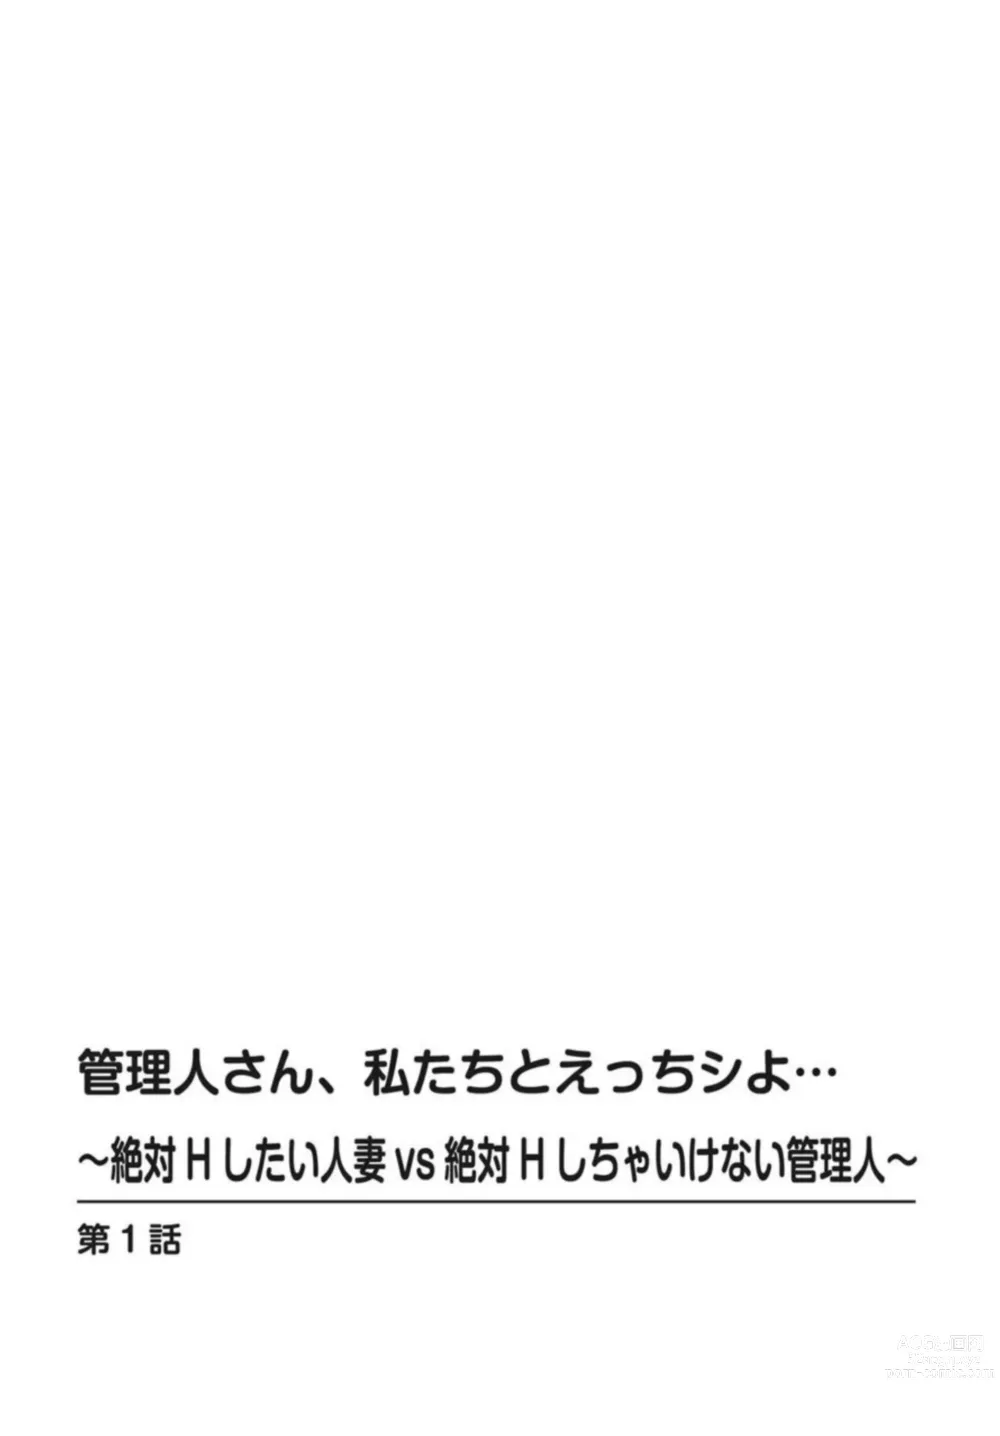 Page 2 of manga Kanrinin-san, Watashitachi to Ecchi Shiyo…～ Zettai H Shitai Hitozuma vs Zettai H Shichaikenai Kanrijin ～1-2【R18 han】